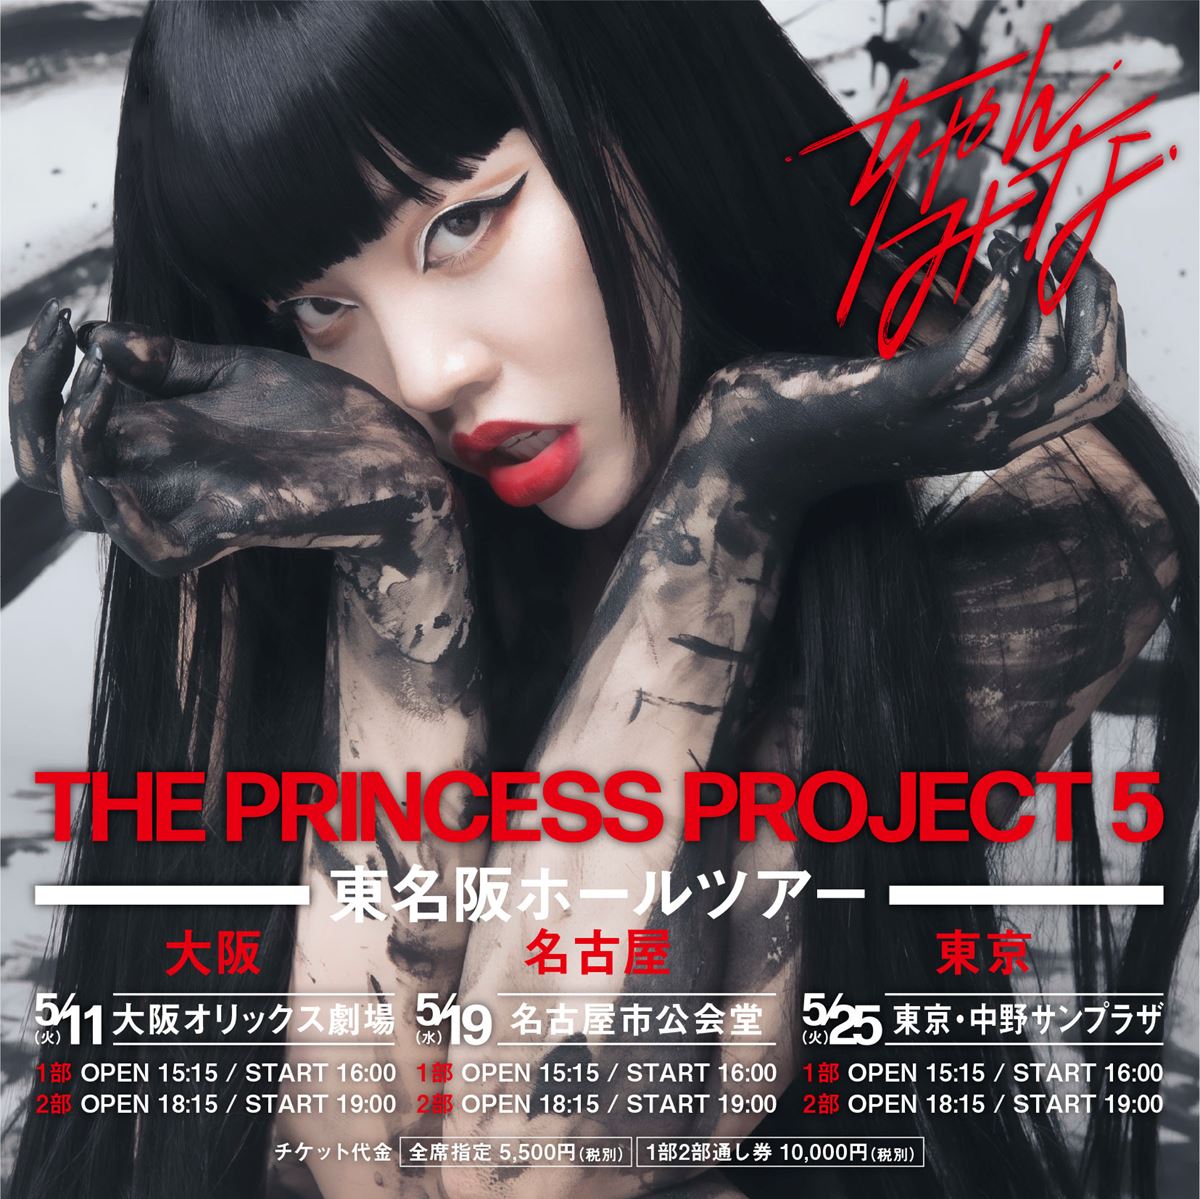 ちゃんみな、ライブツアー「PRINCESS PROJECT 5」大阪・愛知・東京の3 